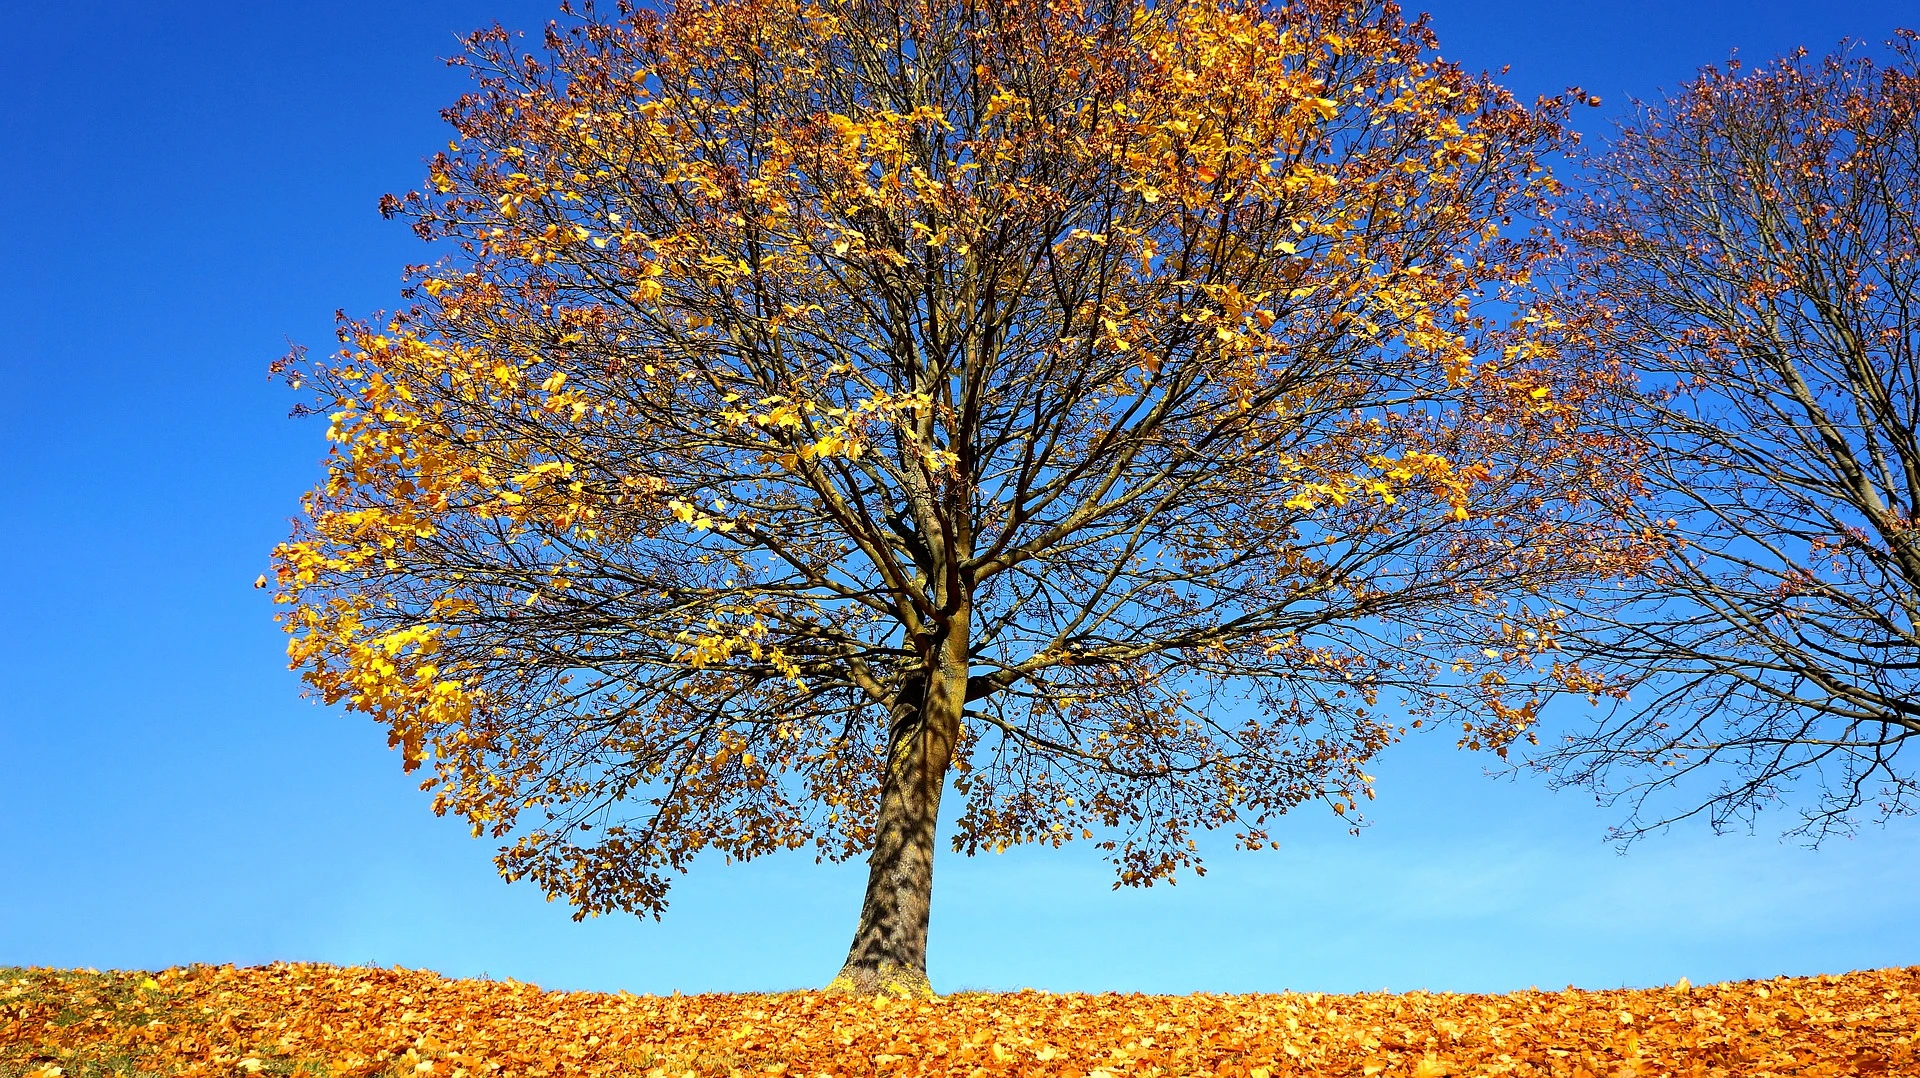 A golden leaf-laden maple tree sheds leaves under a bold blue sky.